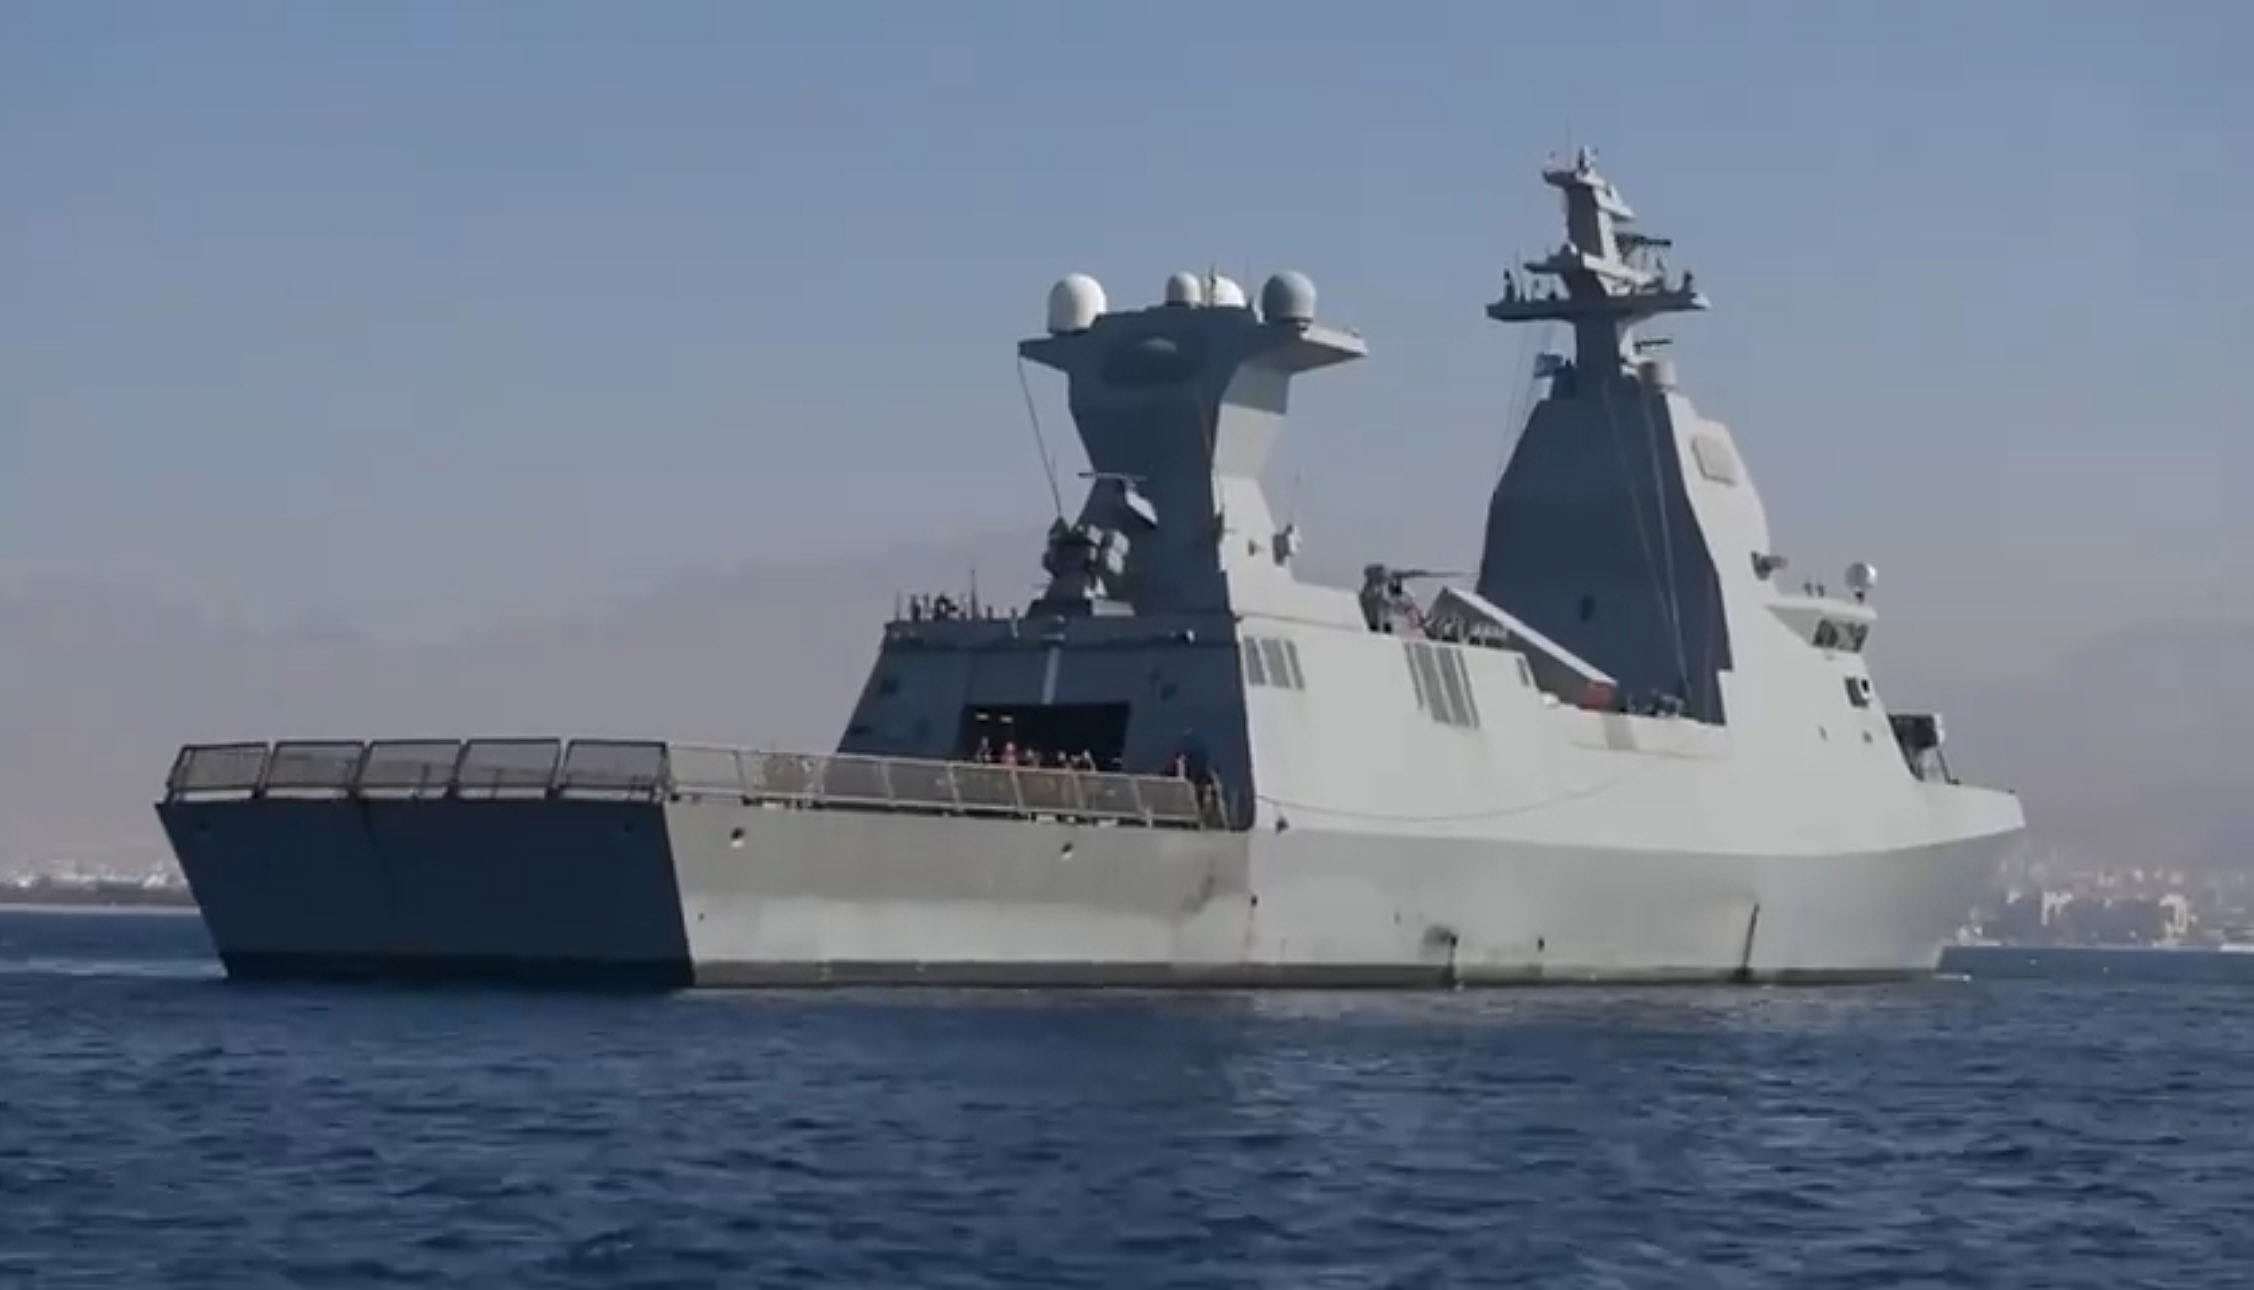 الكشف عن جنسيات بعض قتلى السفينة الأمريكية المستهدفة في خليج عدن